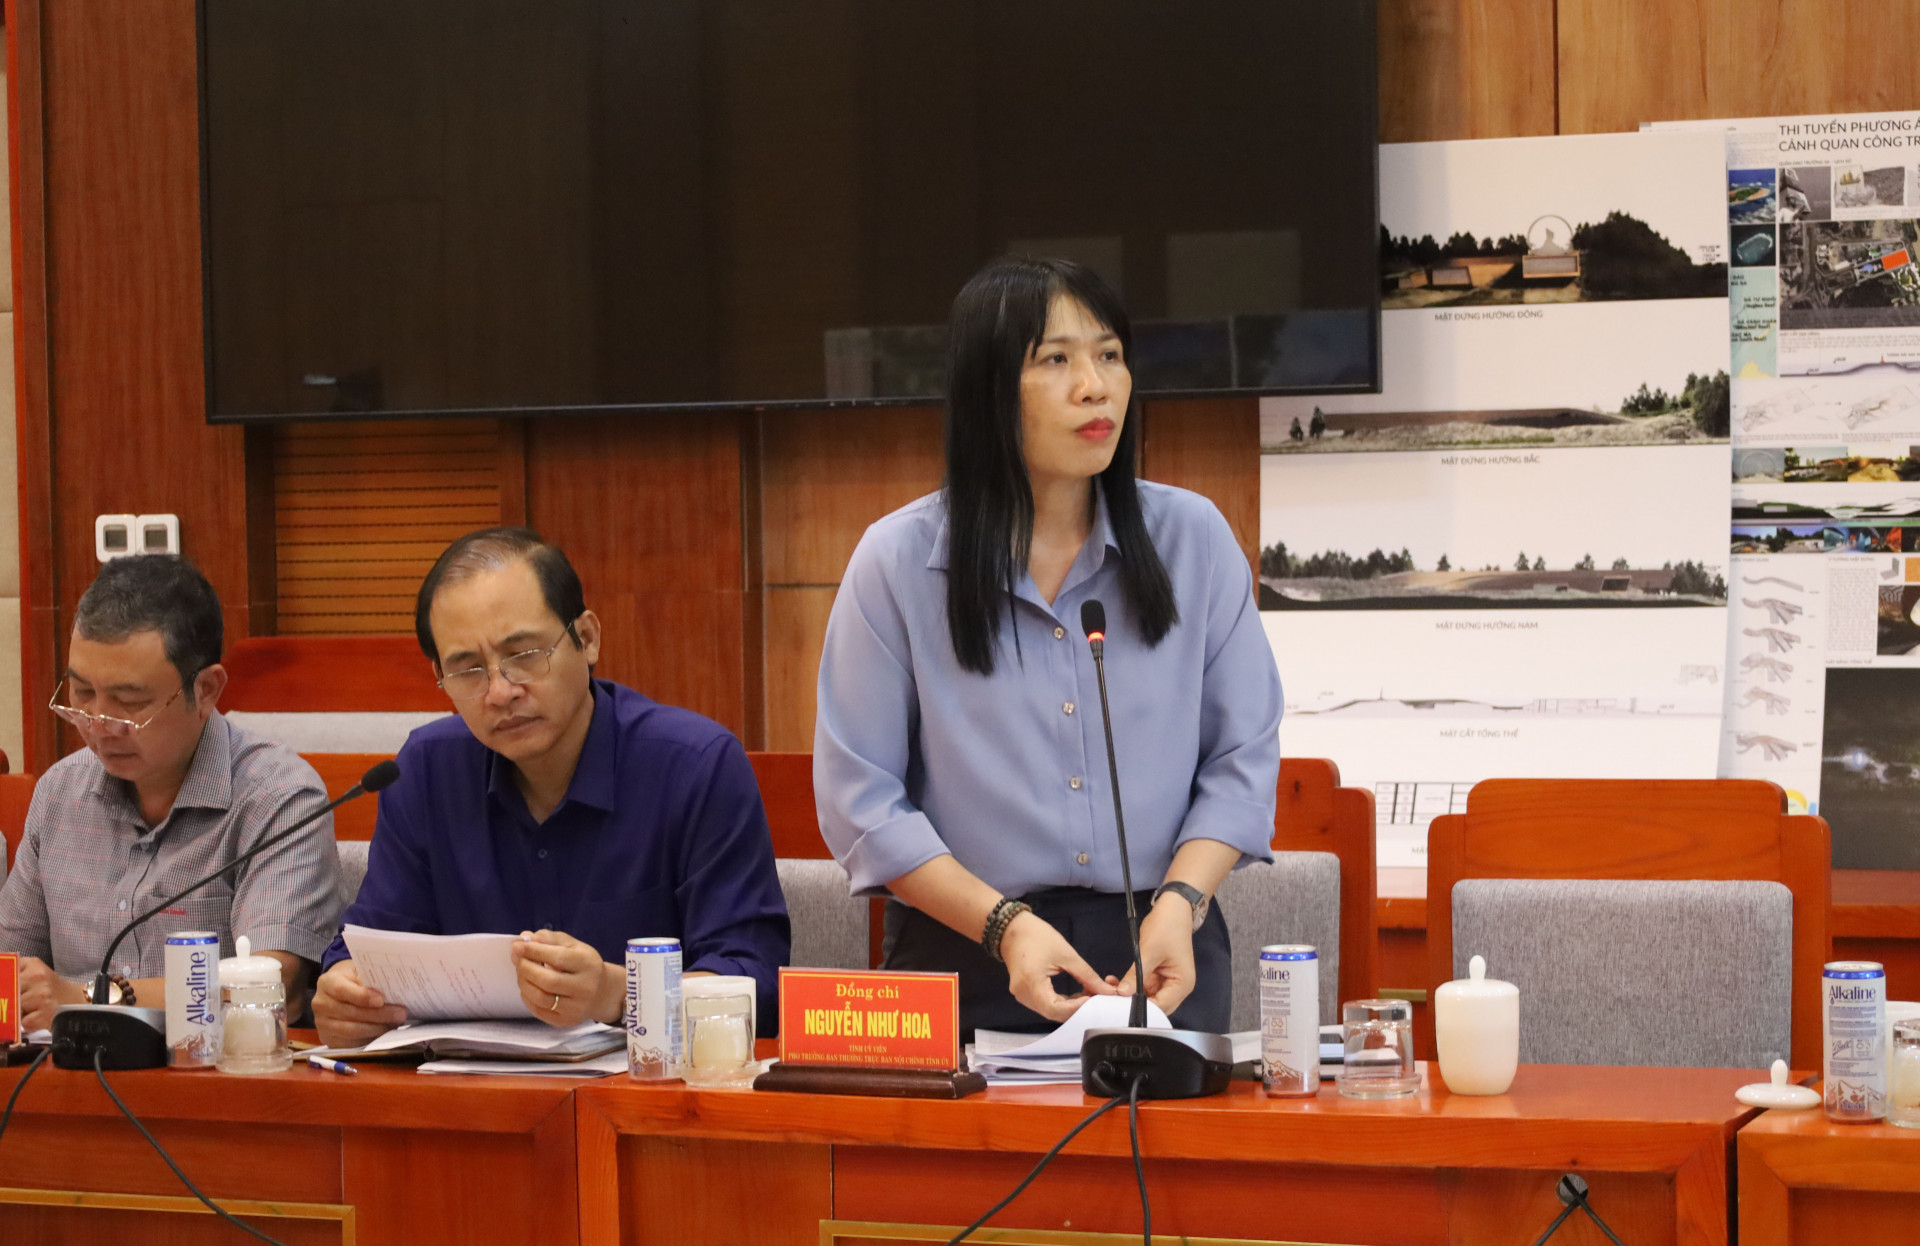 Đồng chí Nguyễn Như Hoa - Phó Trưởng ban thường trực Ban Nội chính Tỉnh ủy báo cáo tại phiên họp.